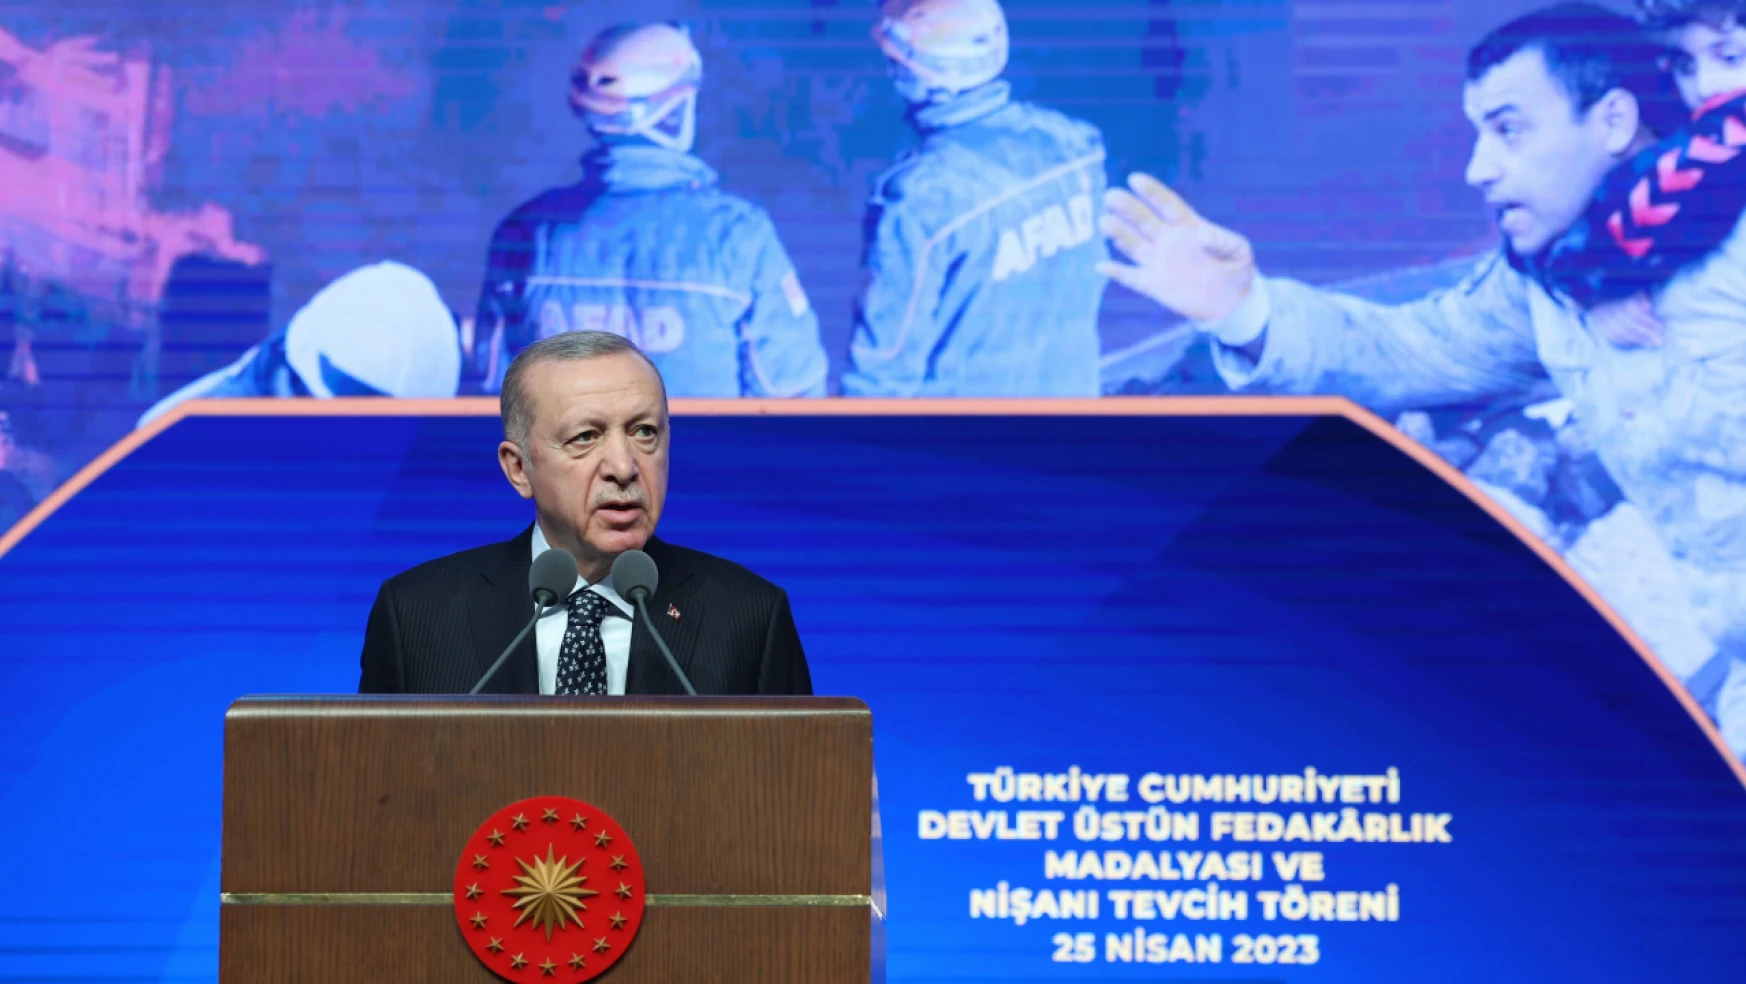 Cumhurbaşkanı Erdoğan:' Tüm şehirlerimizi eski ihtişamına kavuşturana kadar durmayacağız'